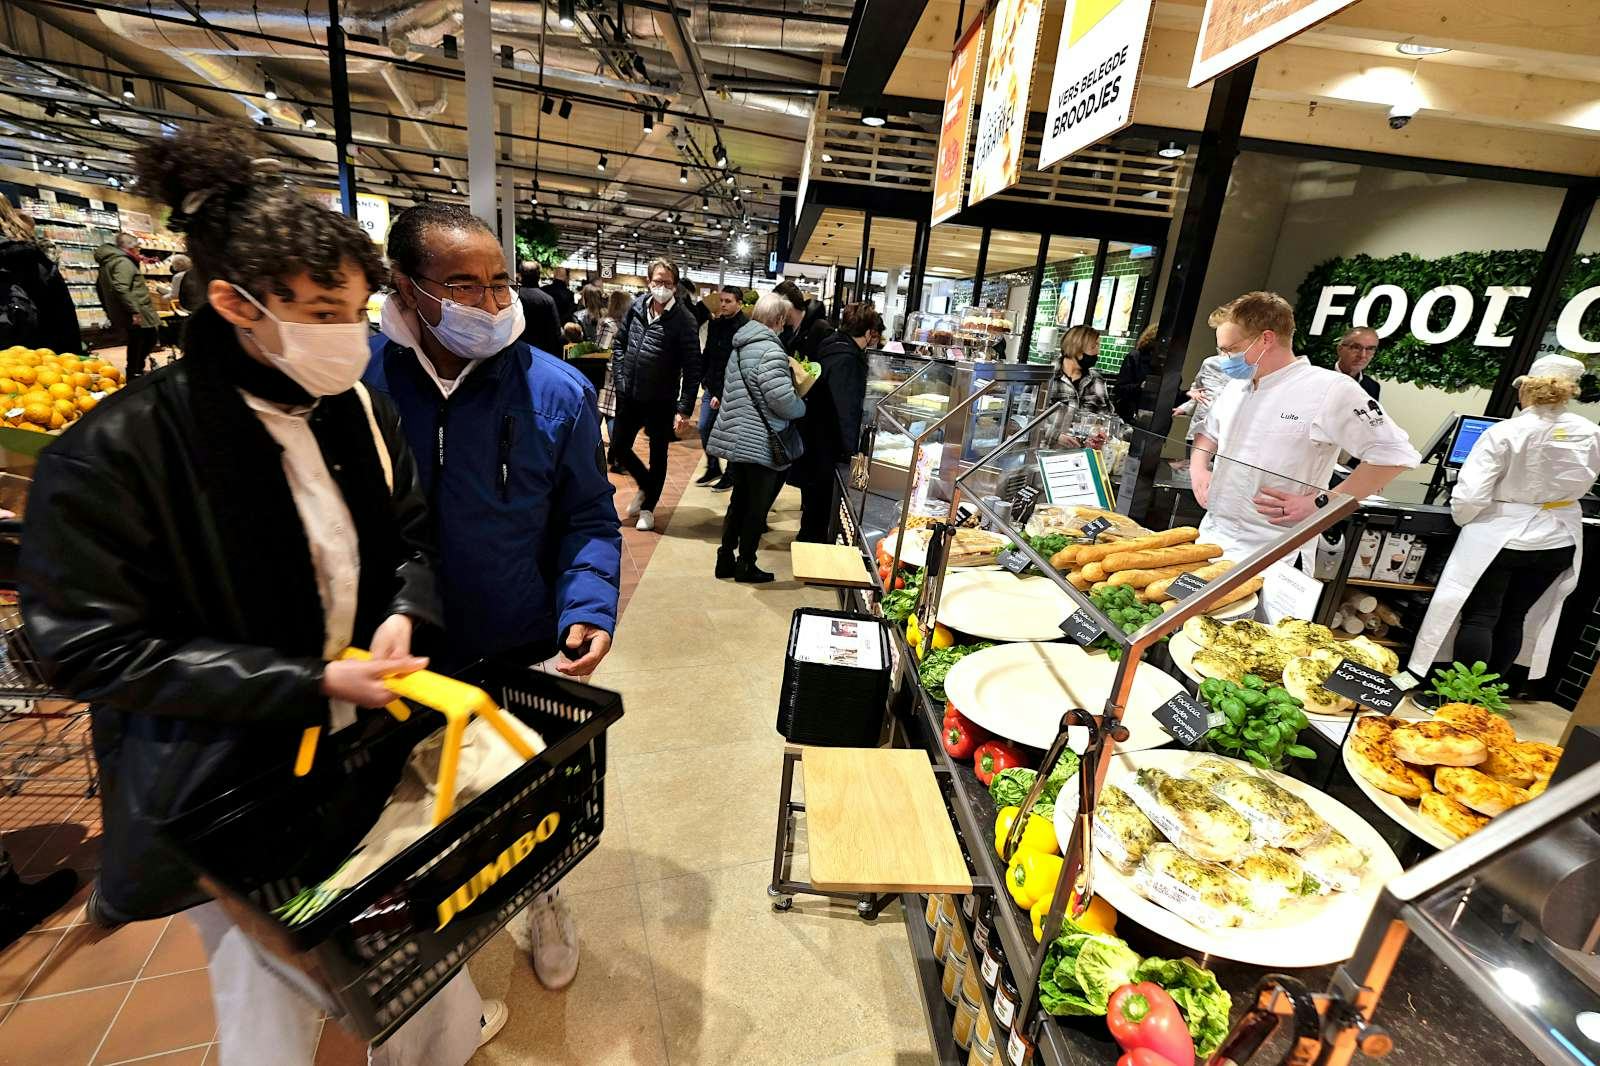 Van Eerd over opening Jumbo Foodmarkt Lemkes:  'Grote stap voor foodretail in Nederland' (video)